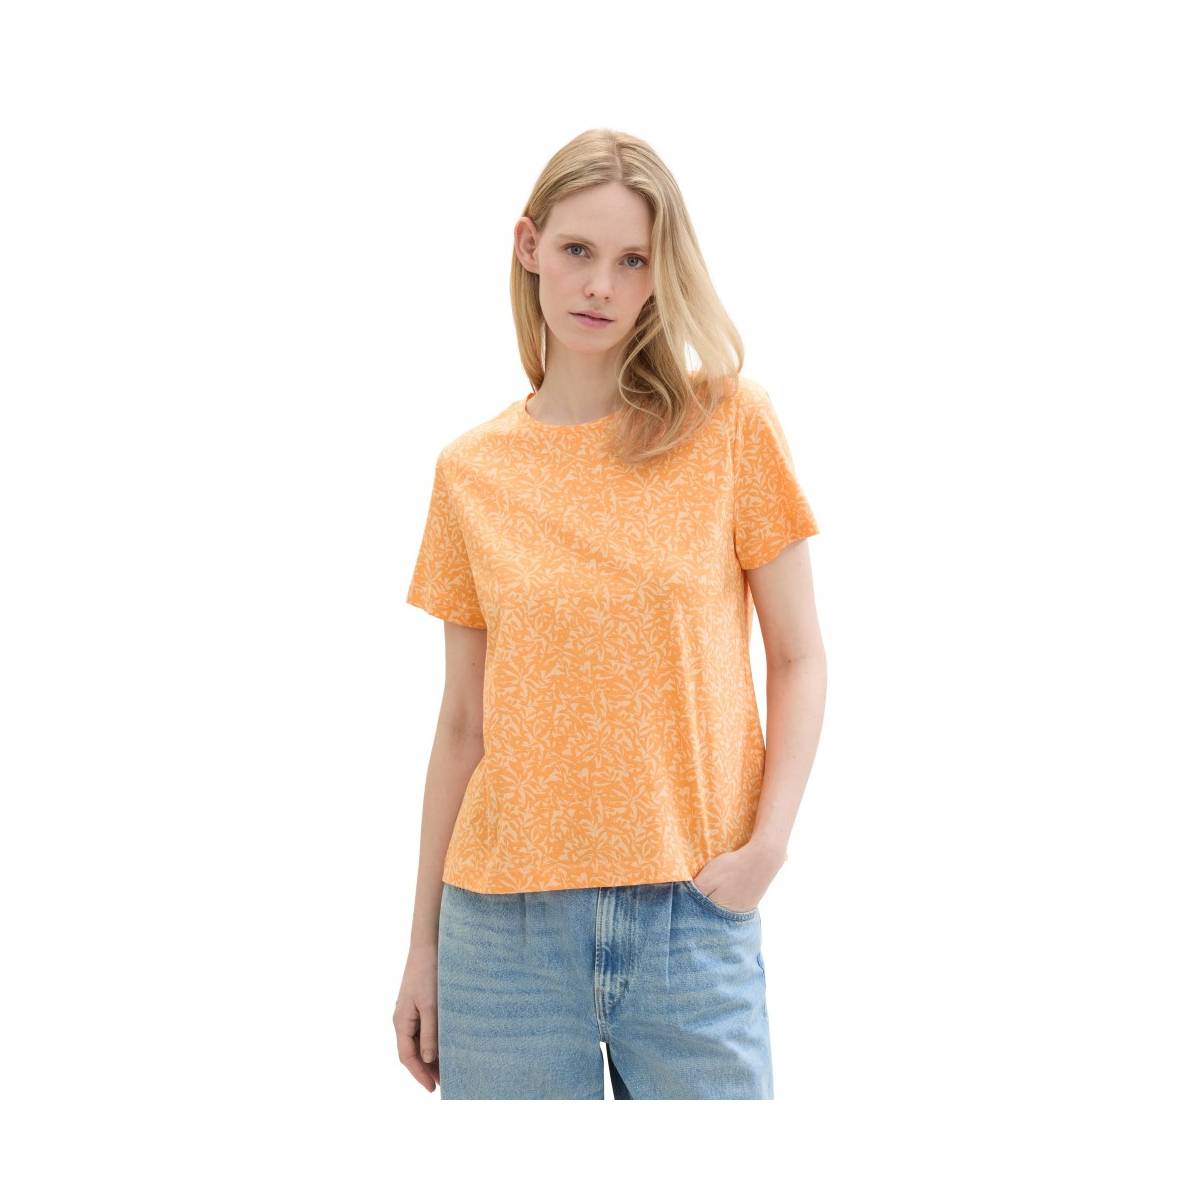 TOM TAILOR  t shirts oranje/color -  model 1040544 - Dameskleding t shirts oranje